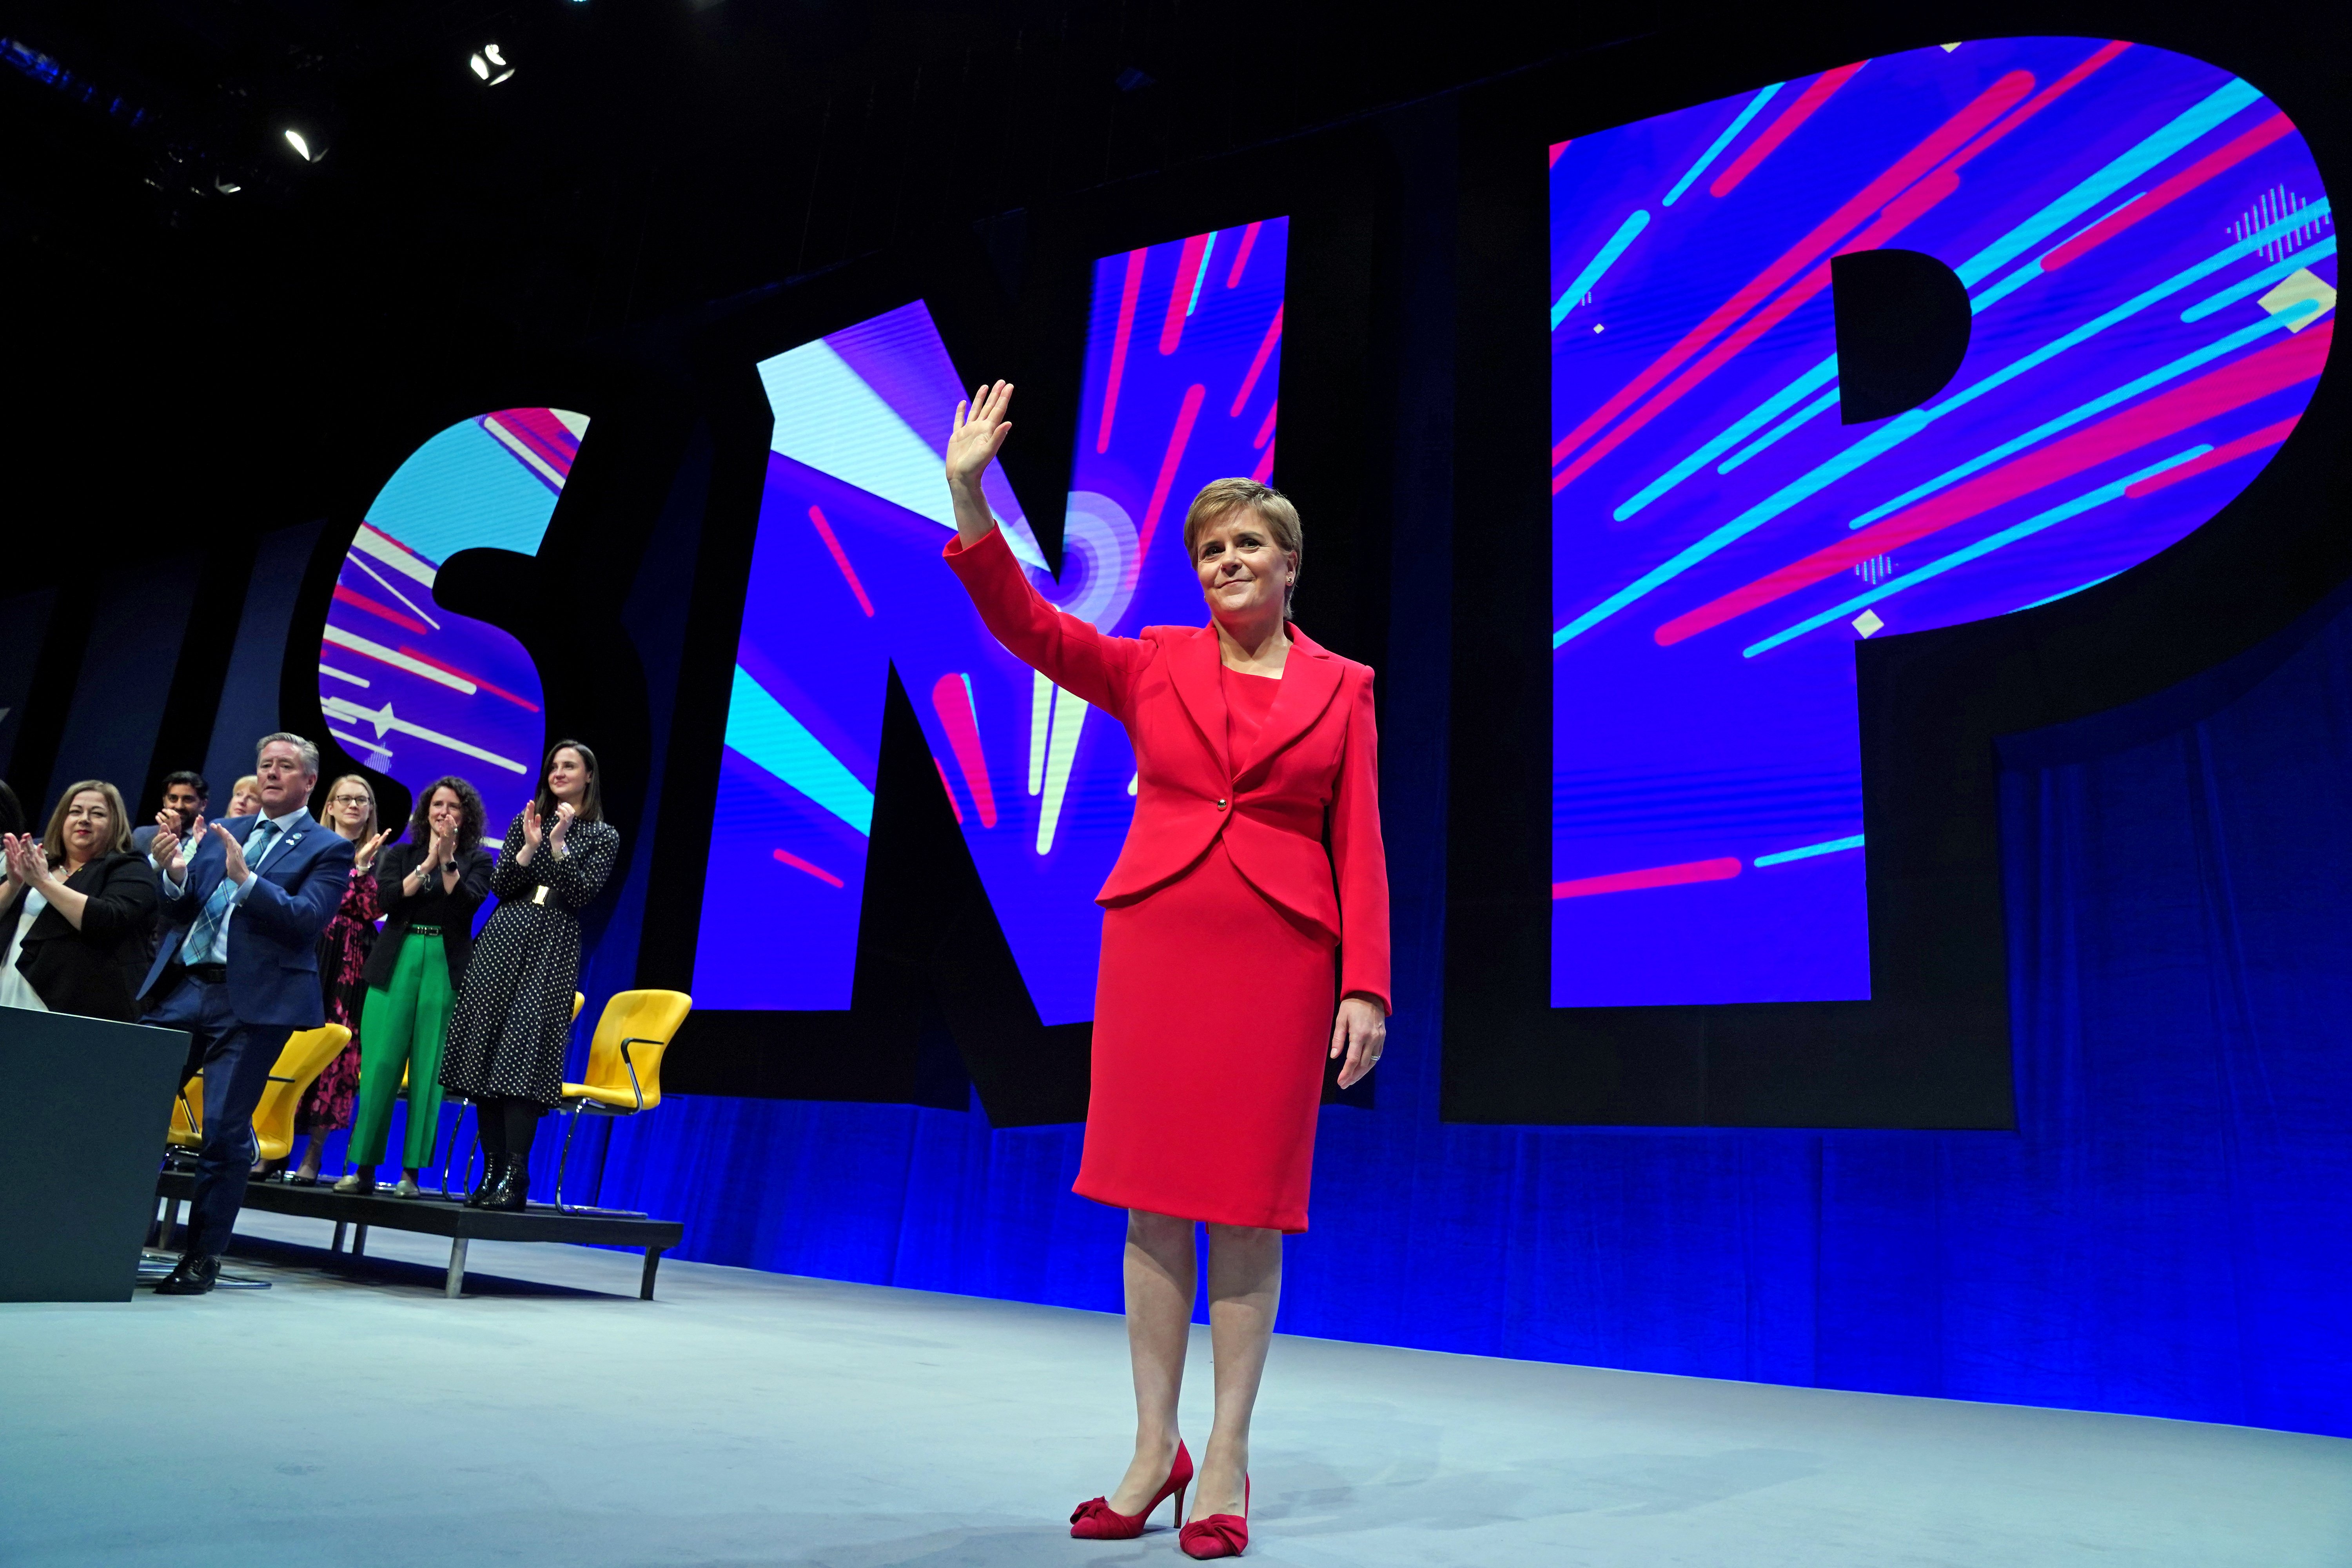 La meitat dels escocesos votaria l'SNP si això els assegura la independència